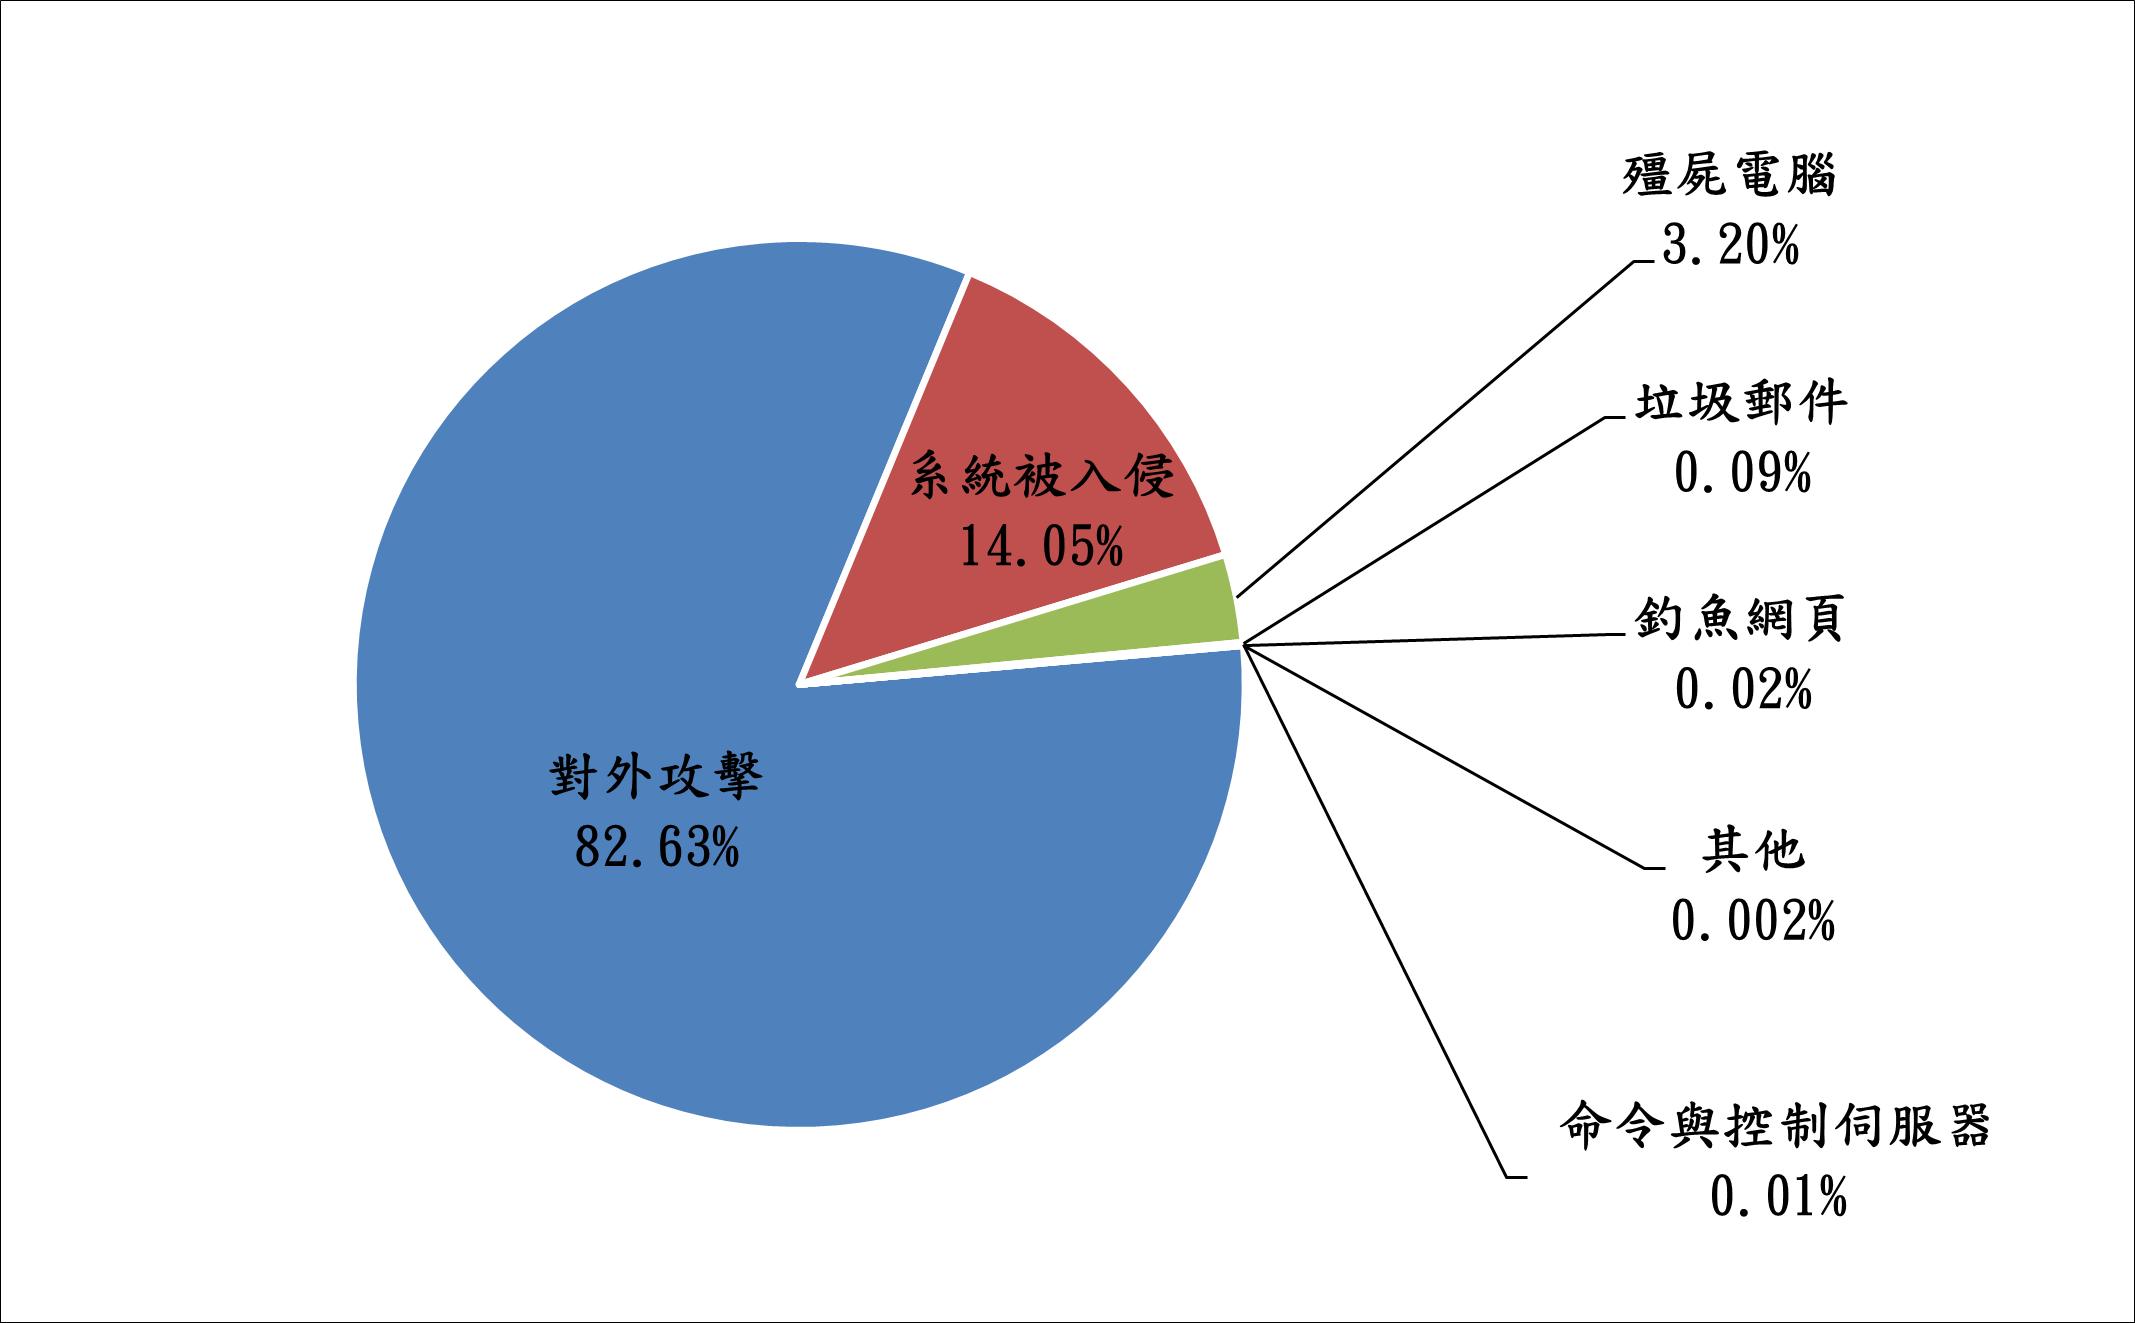 對外攻擊82.63% 系統被入侵14.05% 殭屍電腦3.20% 垃圾郵件0.09% 釣魚網頁0.02% 其他0.002% 命令與控制伺服器0.01%